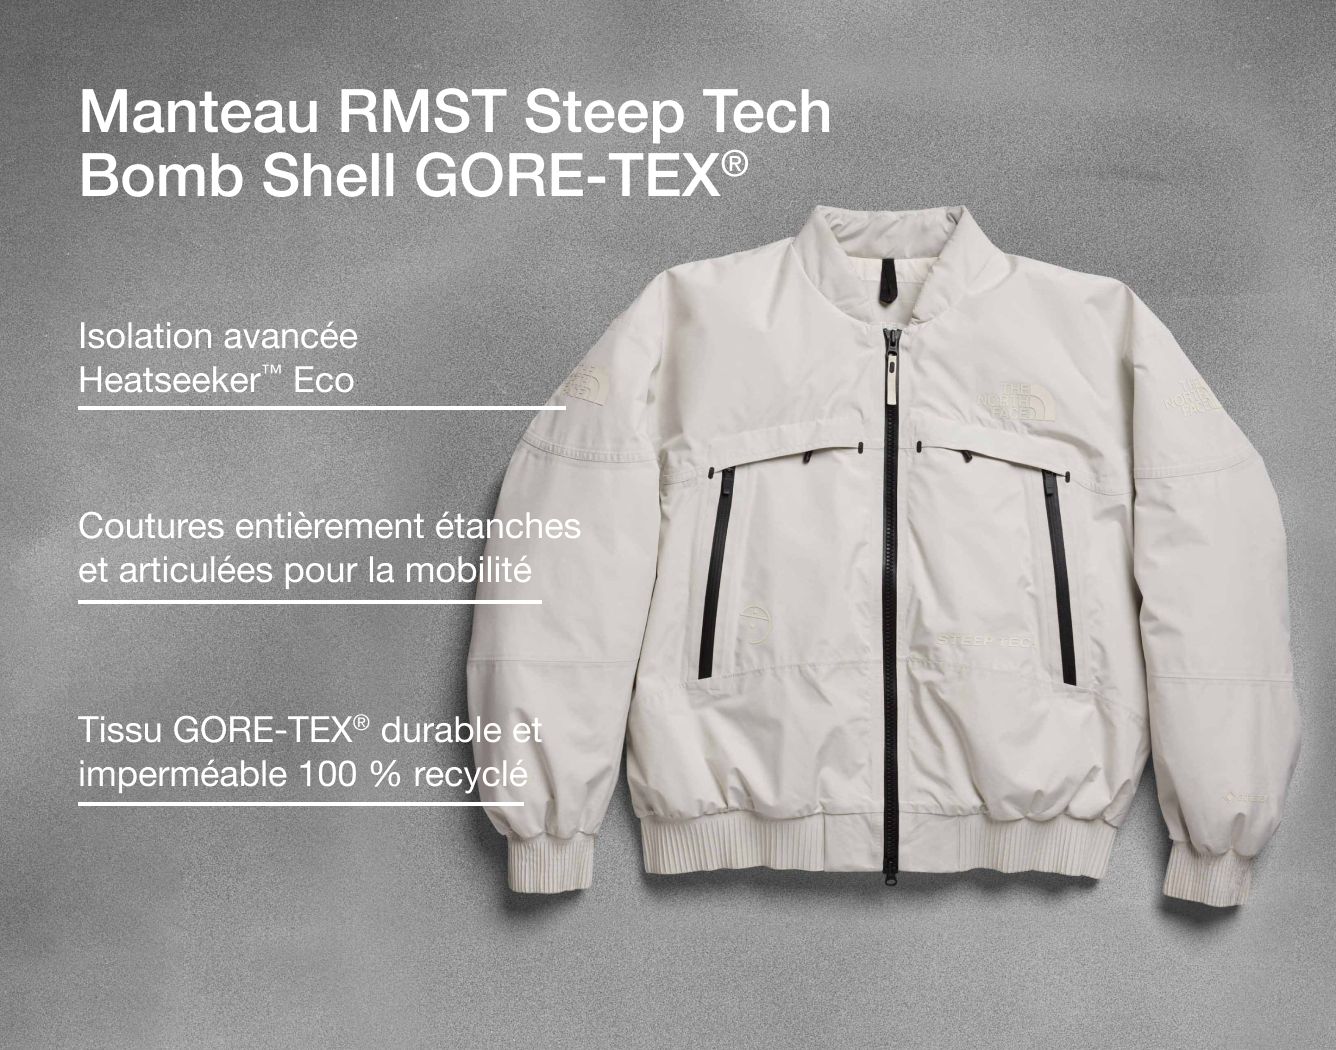 Photo studio du RMST Steep Tech Bomb Shell avec superposition de texte indiquant la fabrication et l’isolation